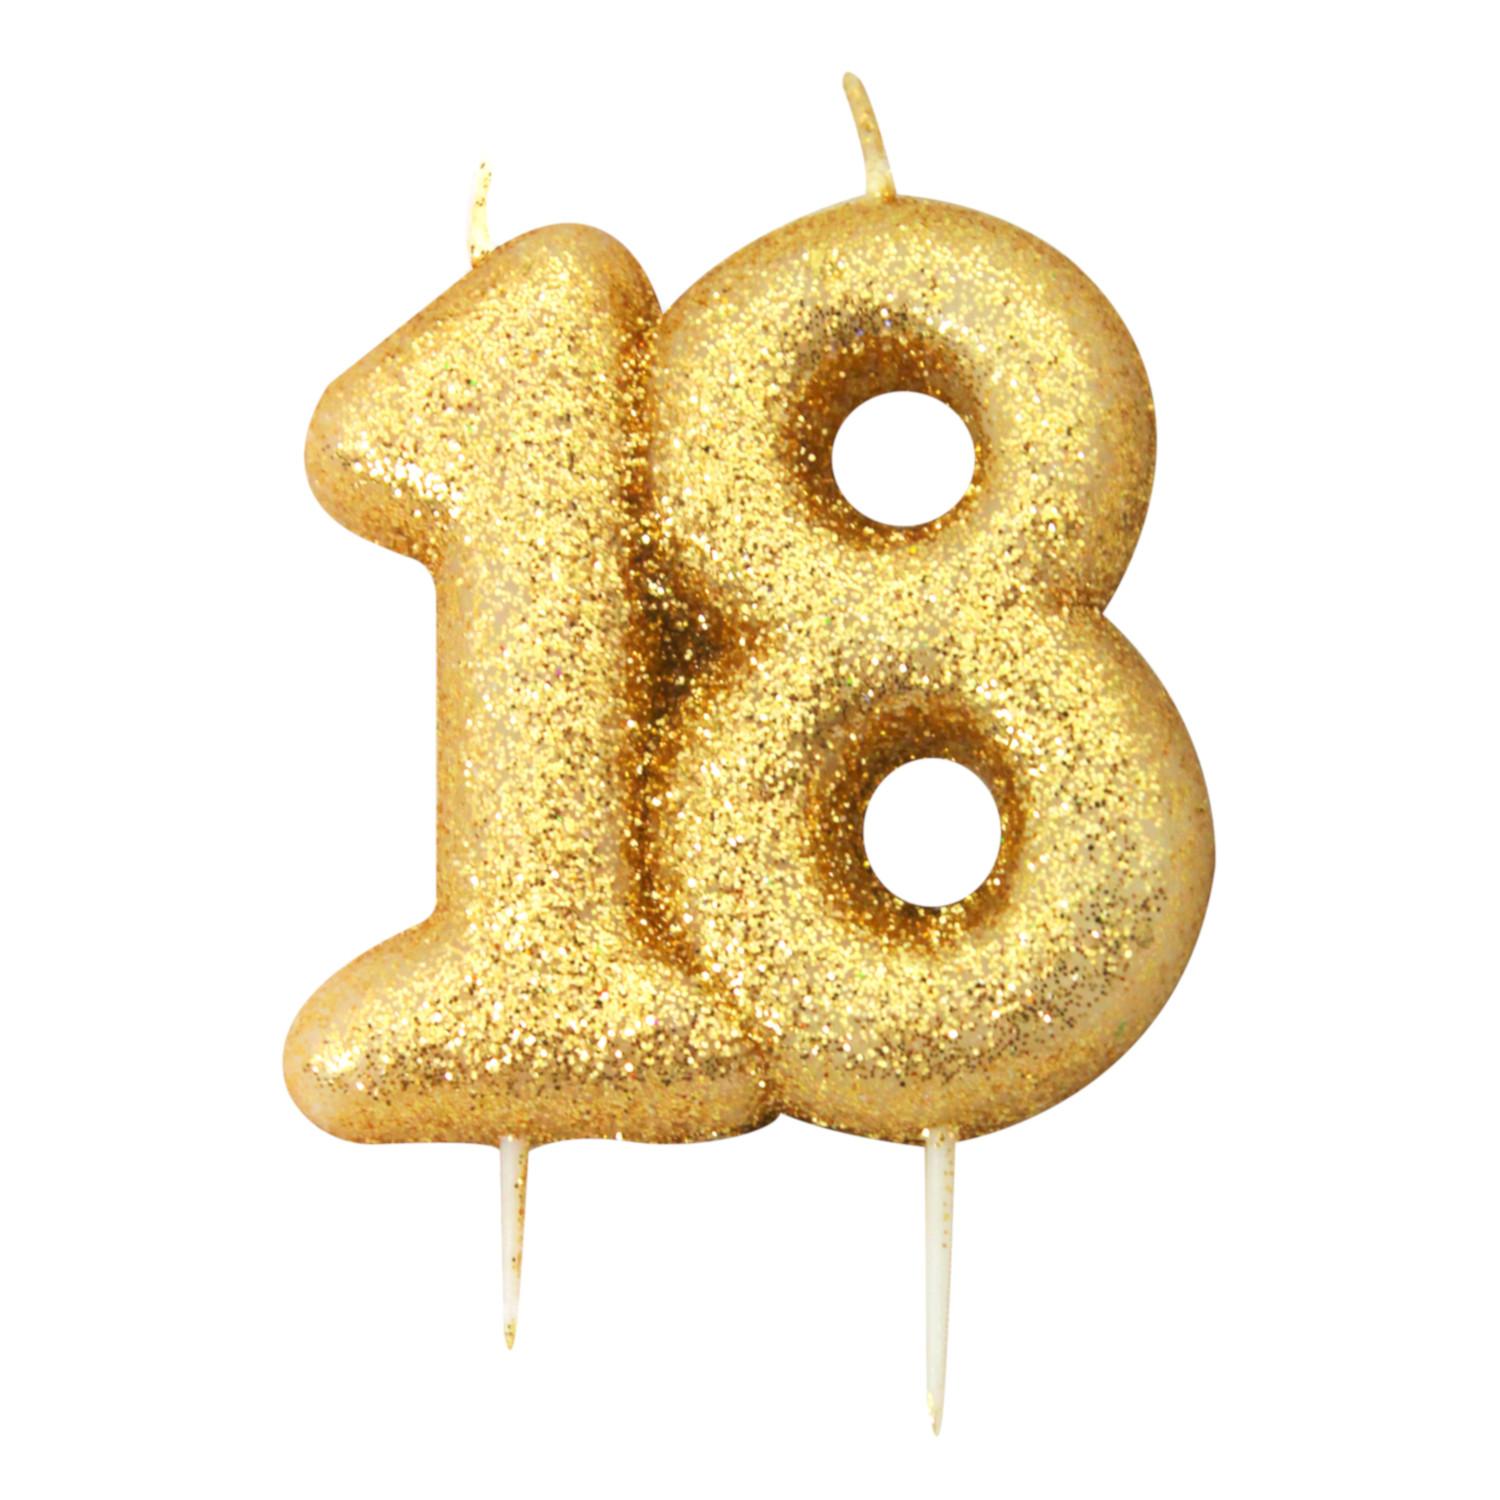 Lys formet som tallet 18 i guld til et brag af 18 års fødselsdag